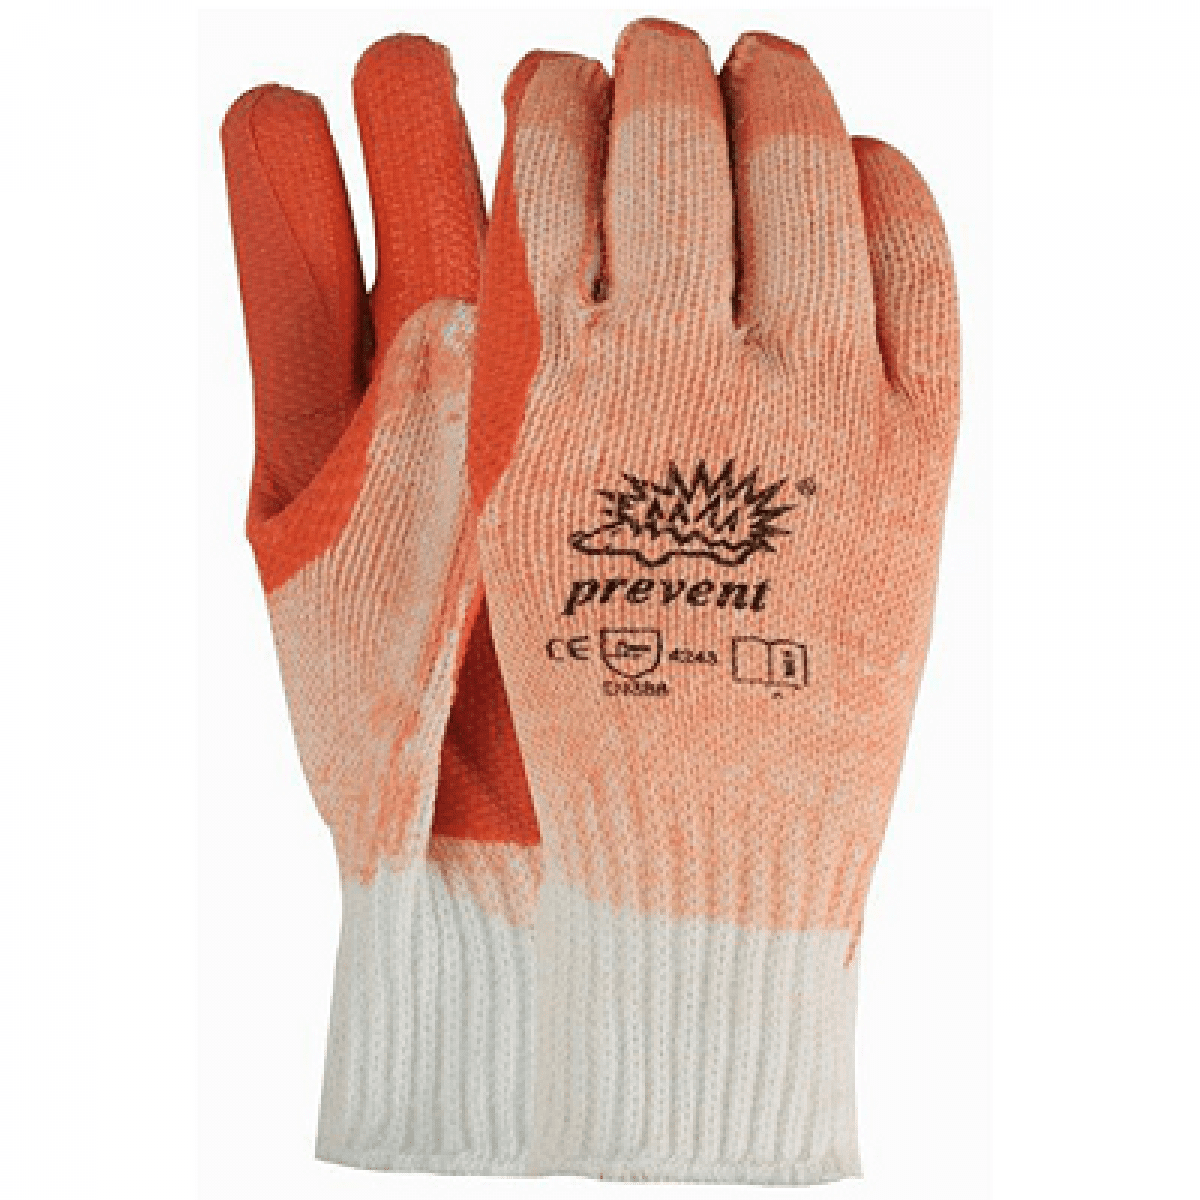 Eigendom Omleiden Literatuur Handschoen Prevent *ORIGINEEL* | Infra Tools